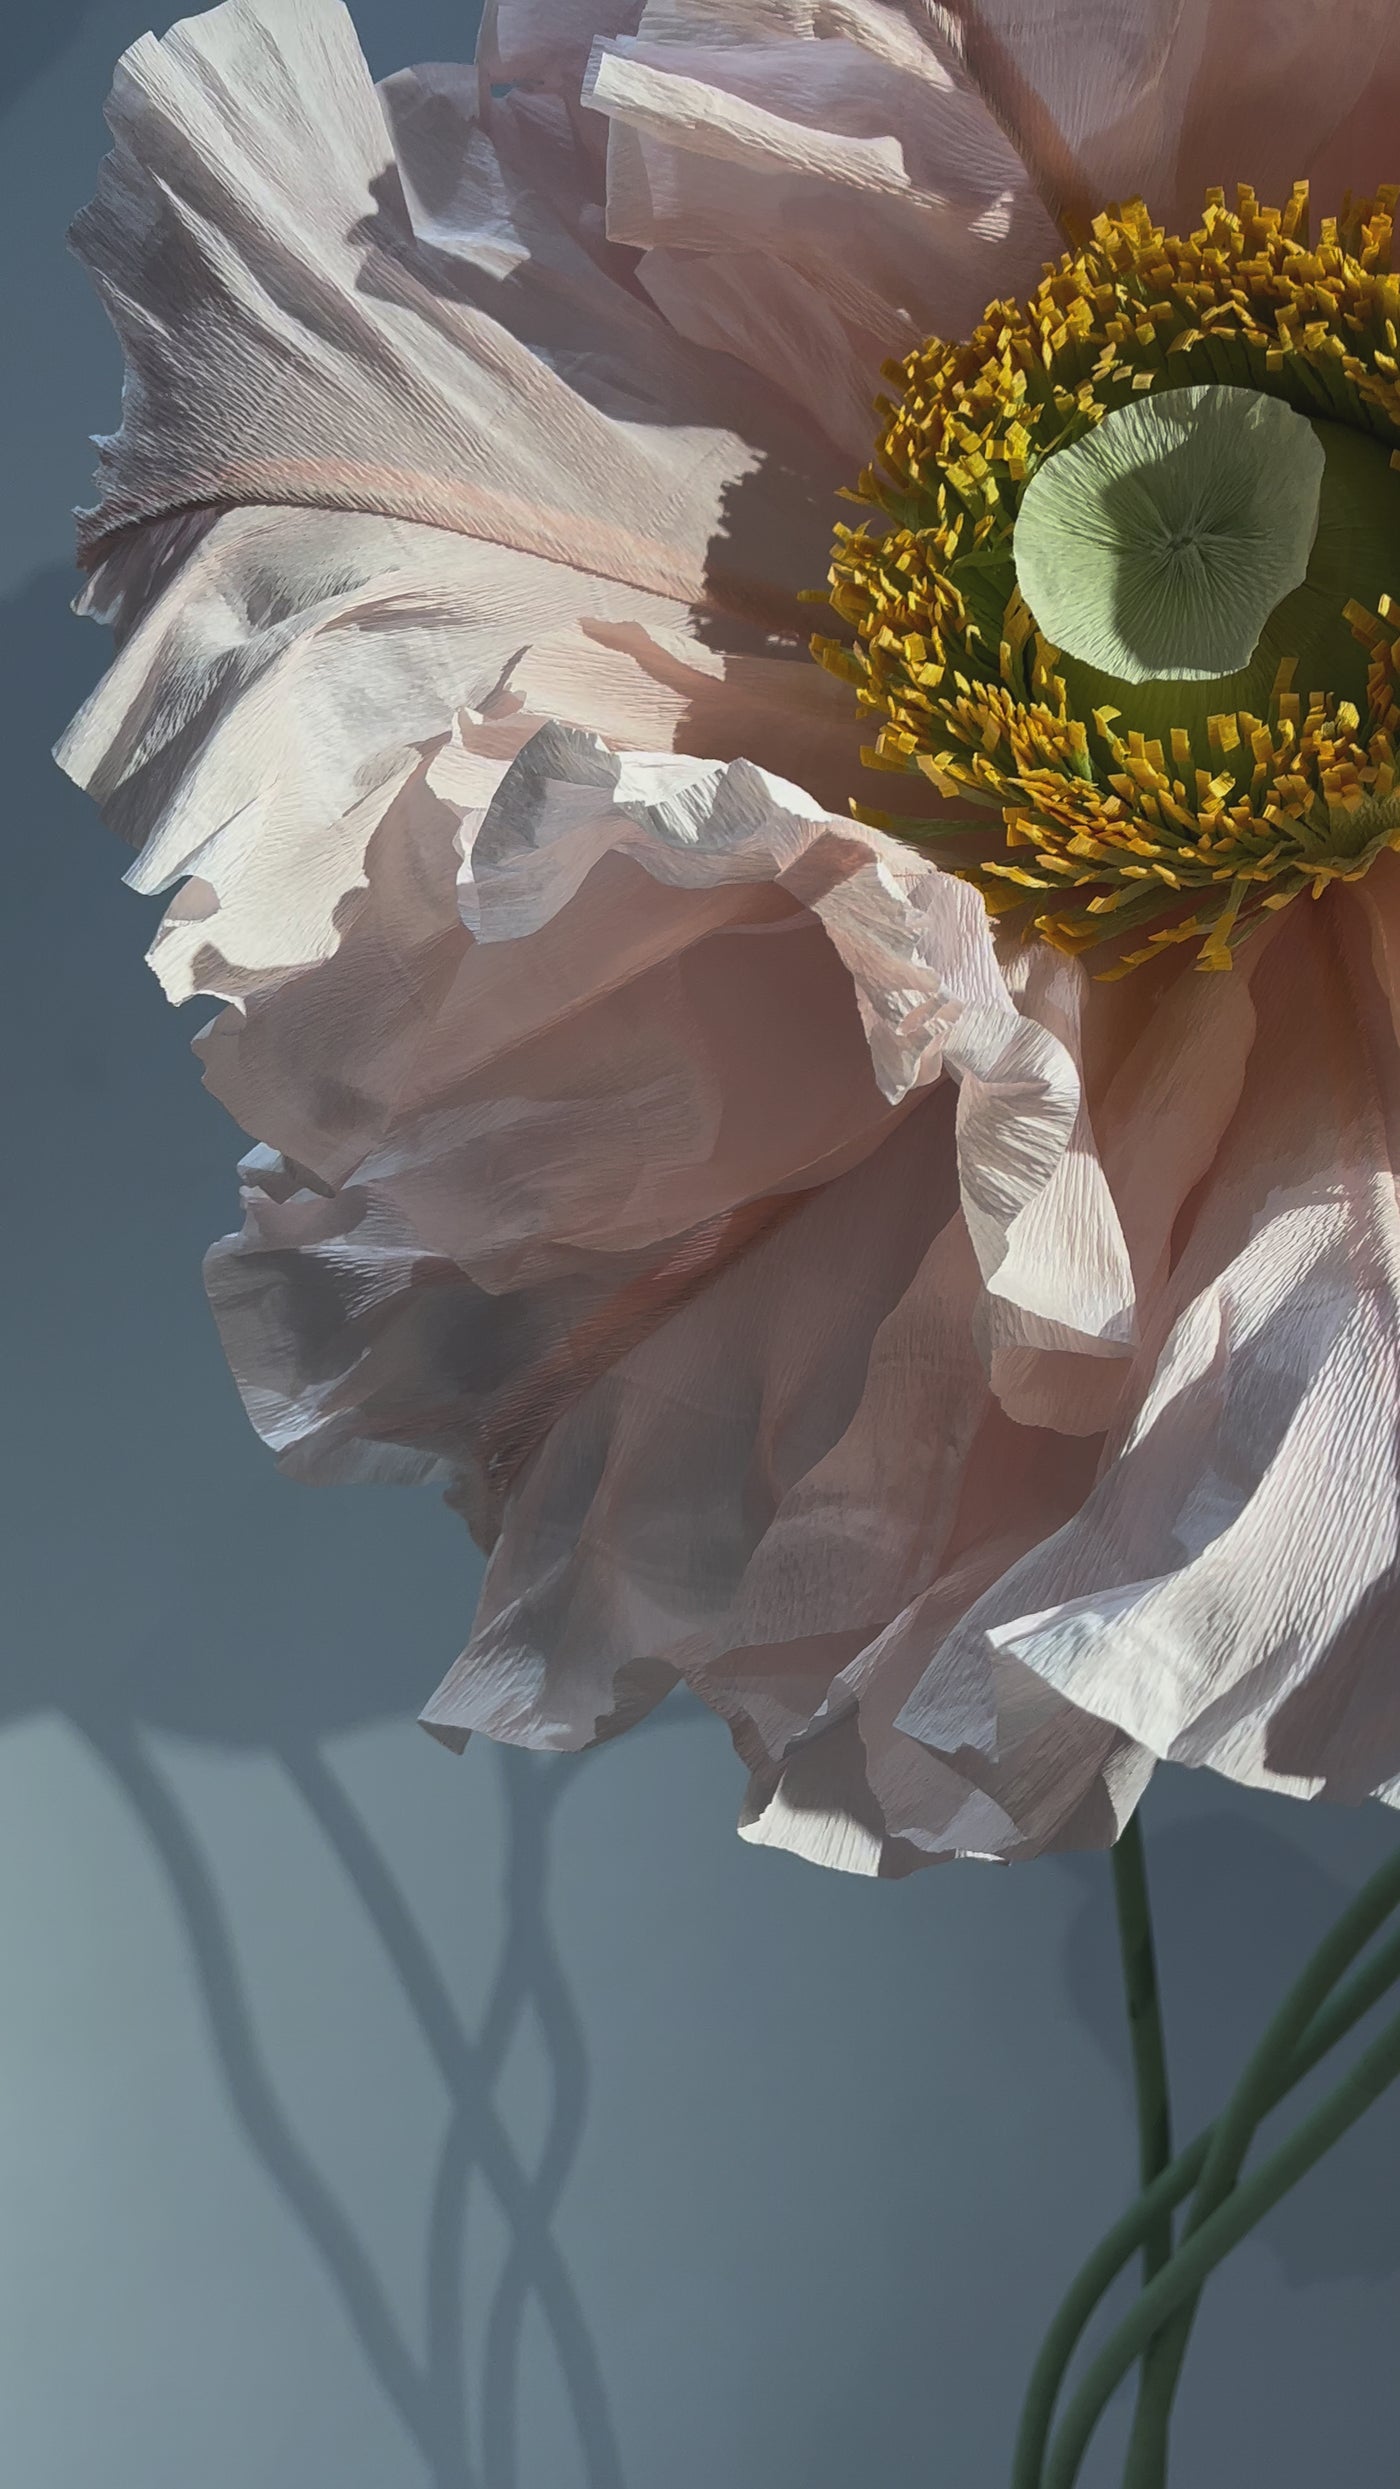 Riesige Papierblumen in Blush und Misty Rose – große Papierblumen